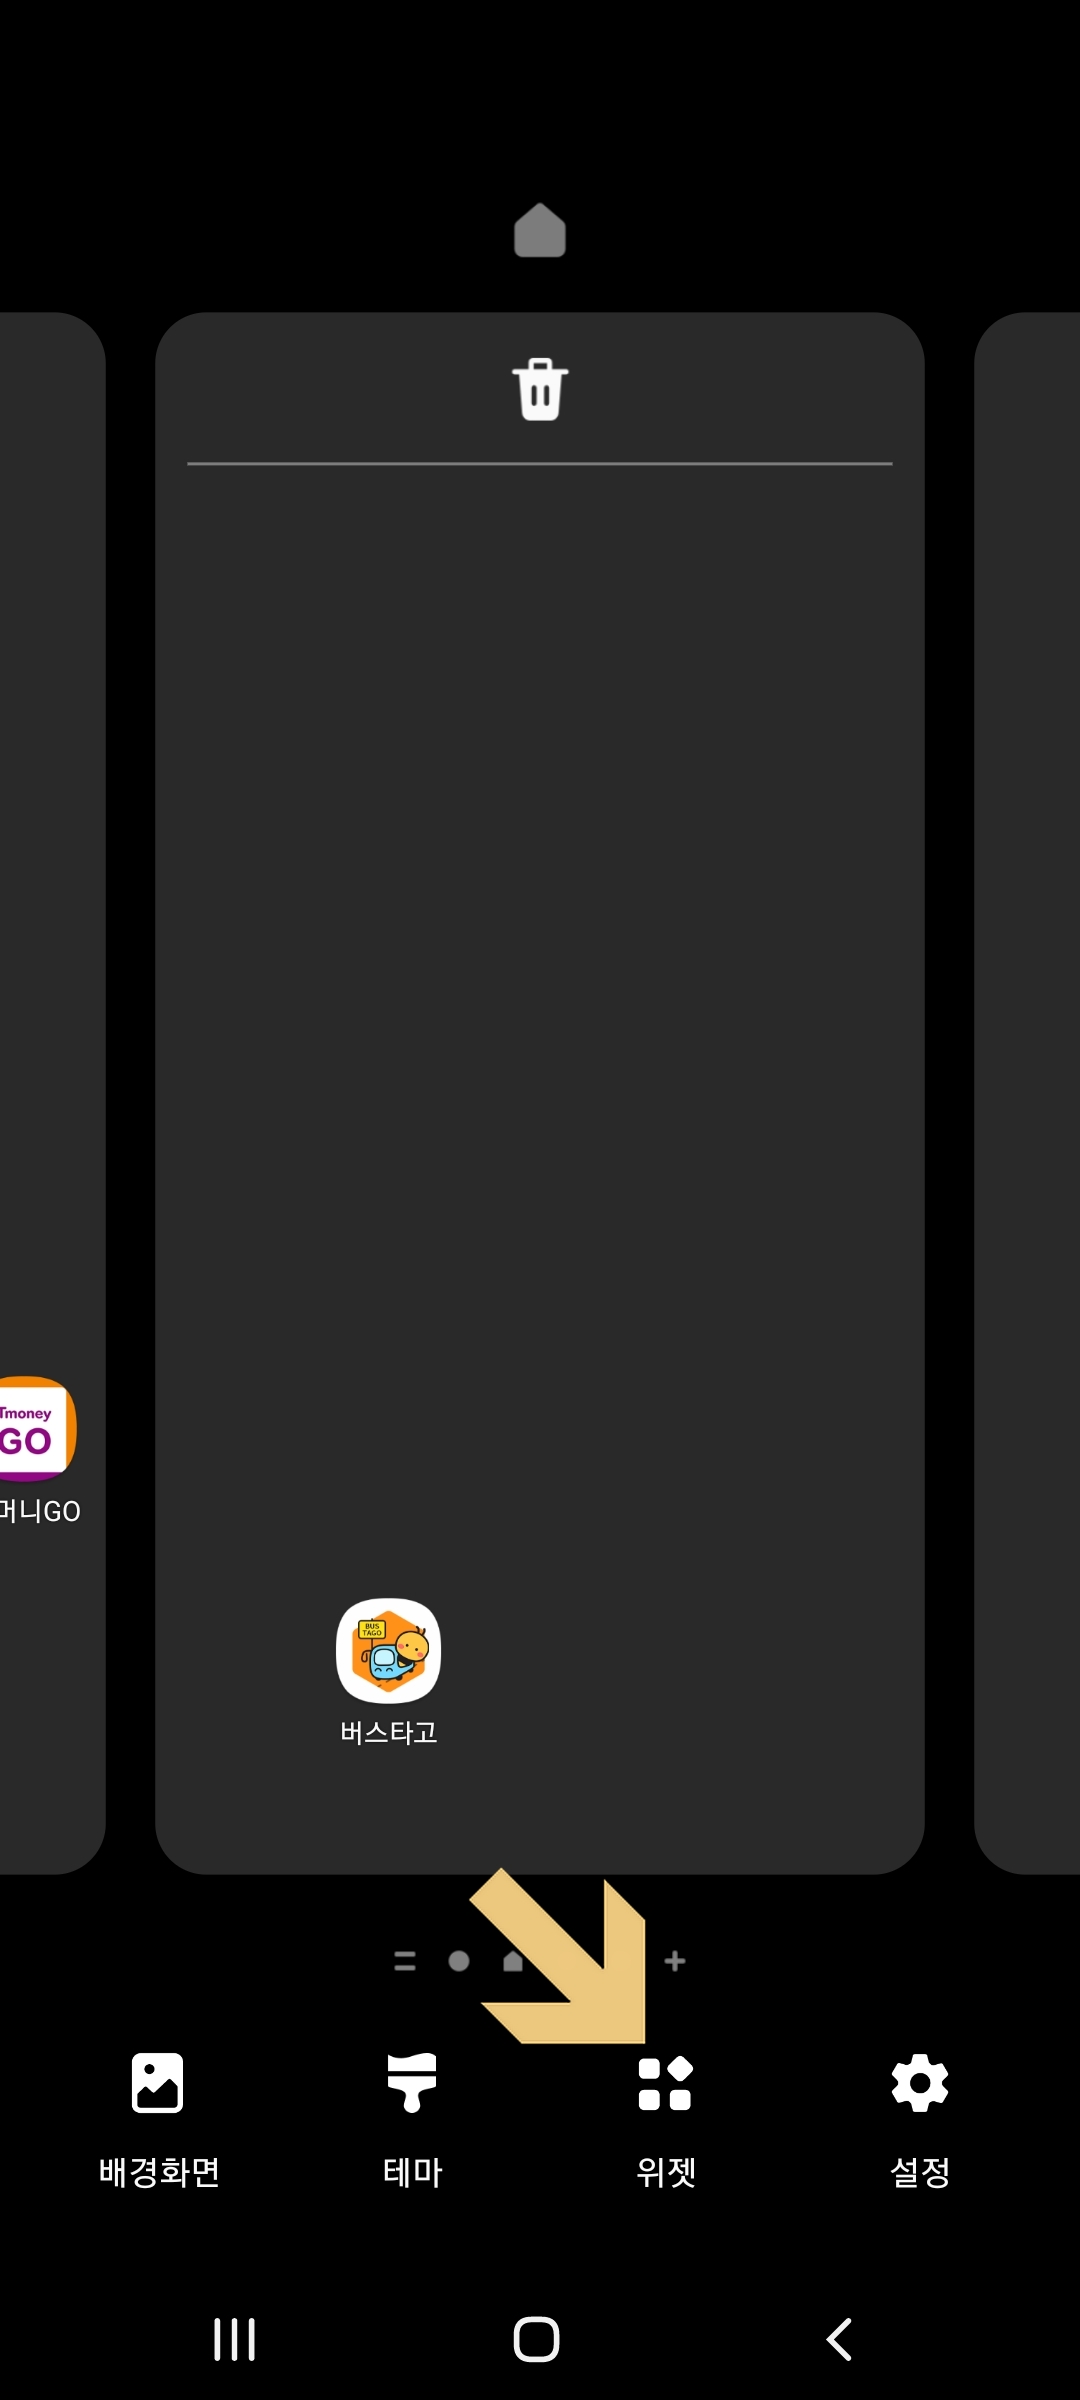 갤럭시 홈 화면 위젯 메뉴